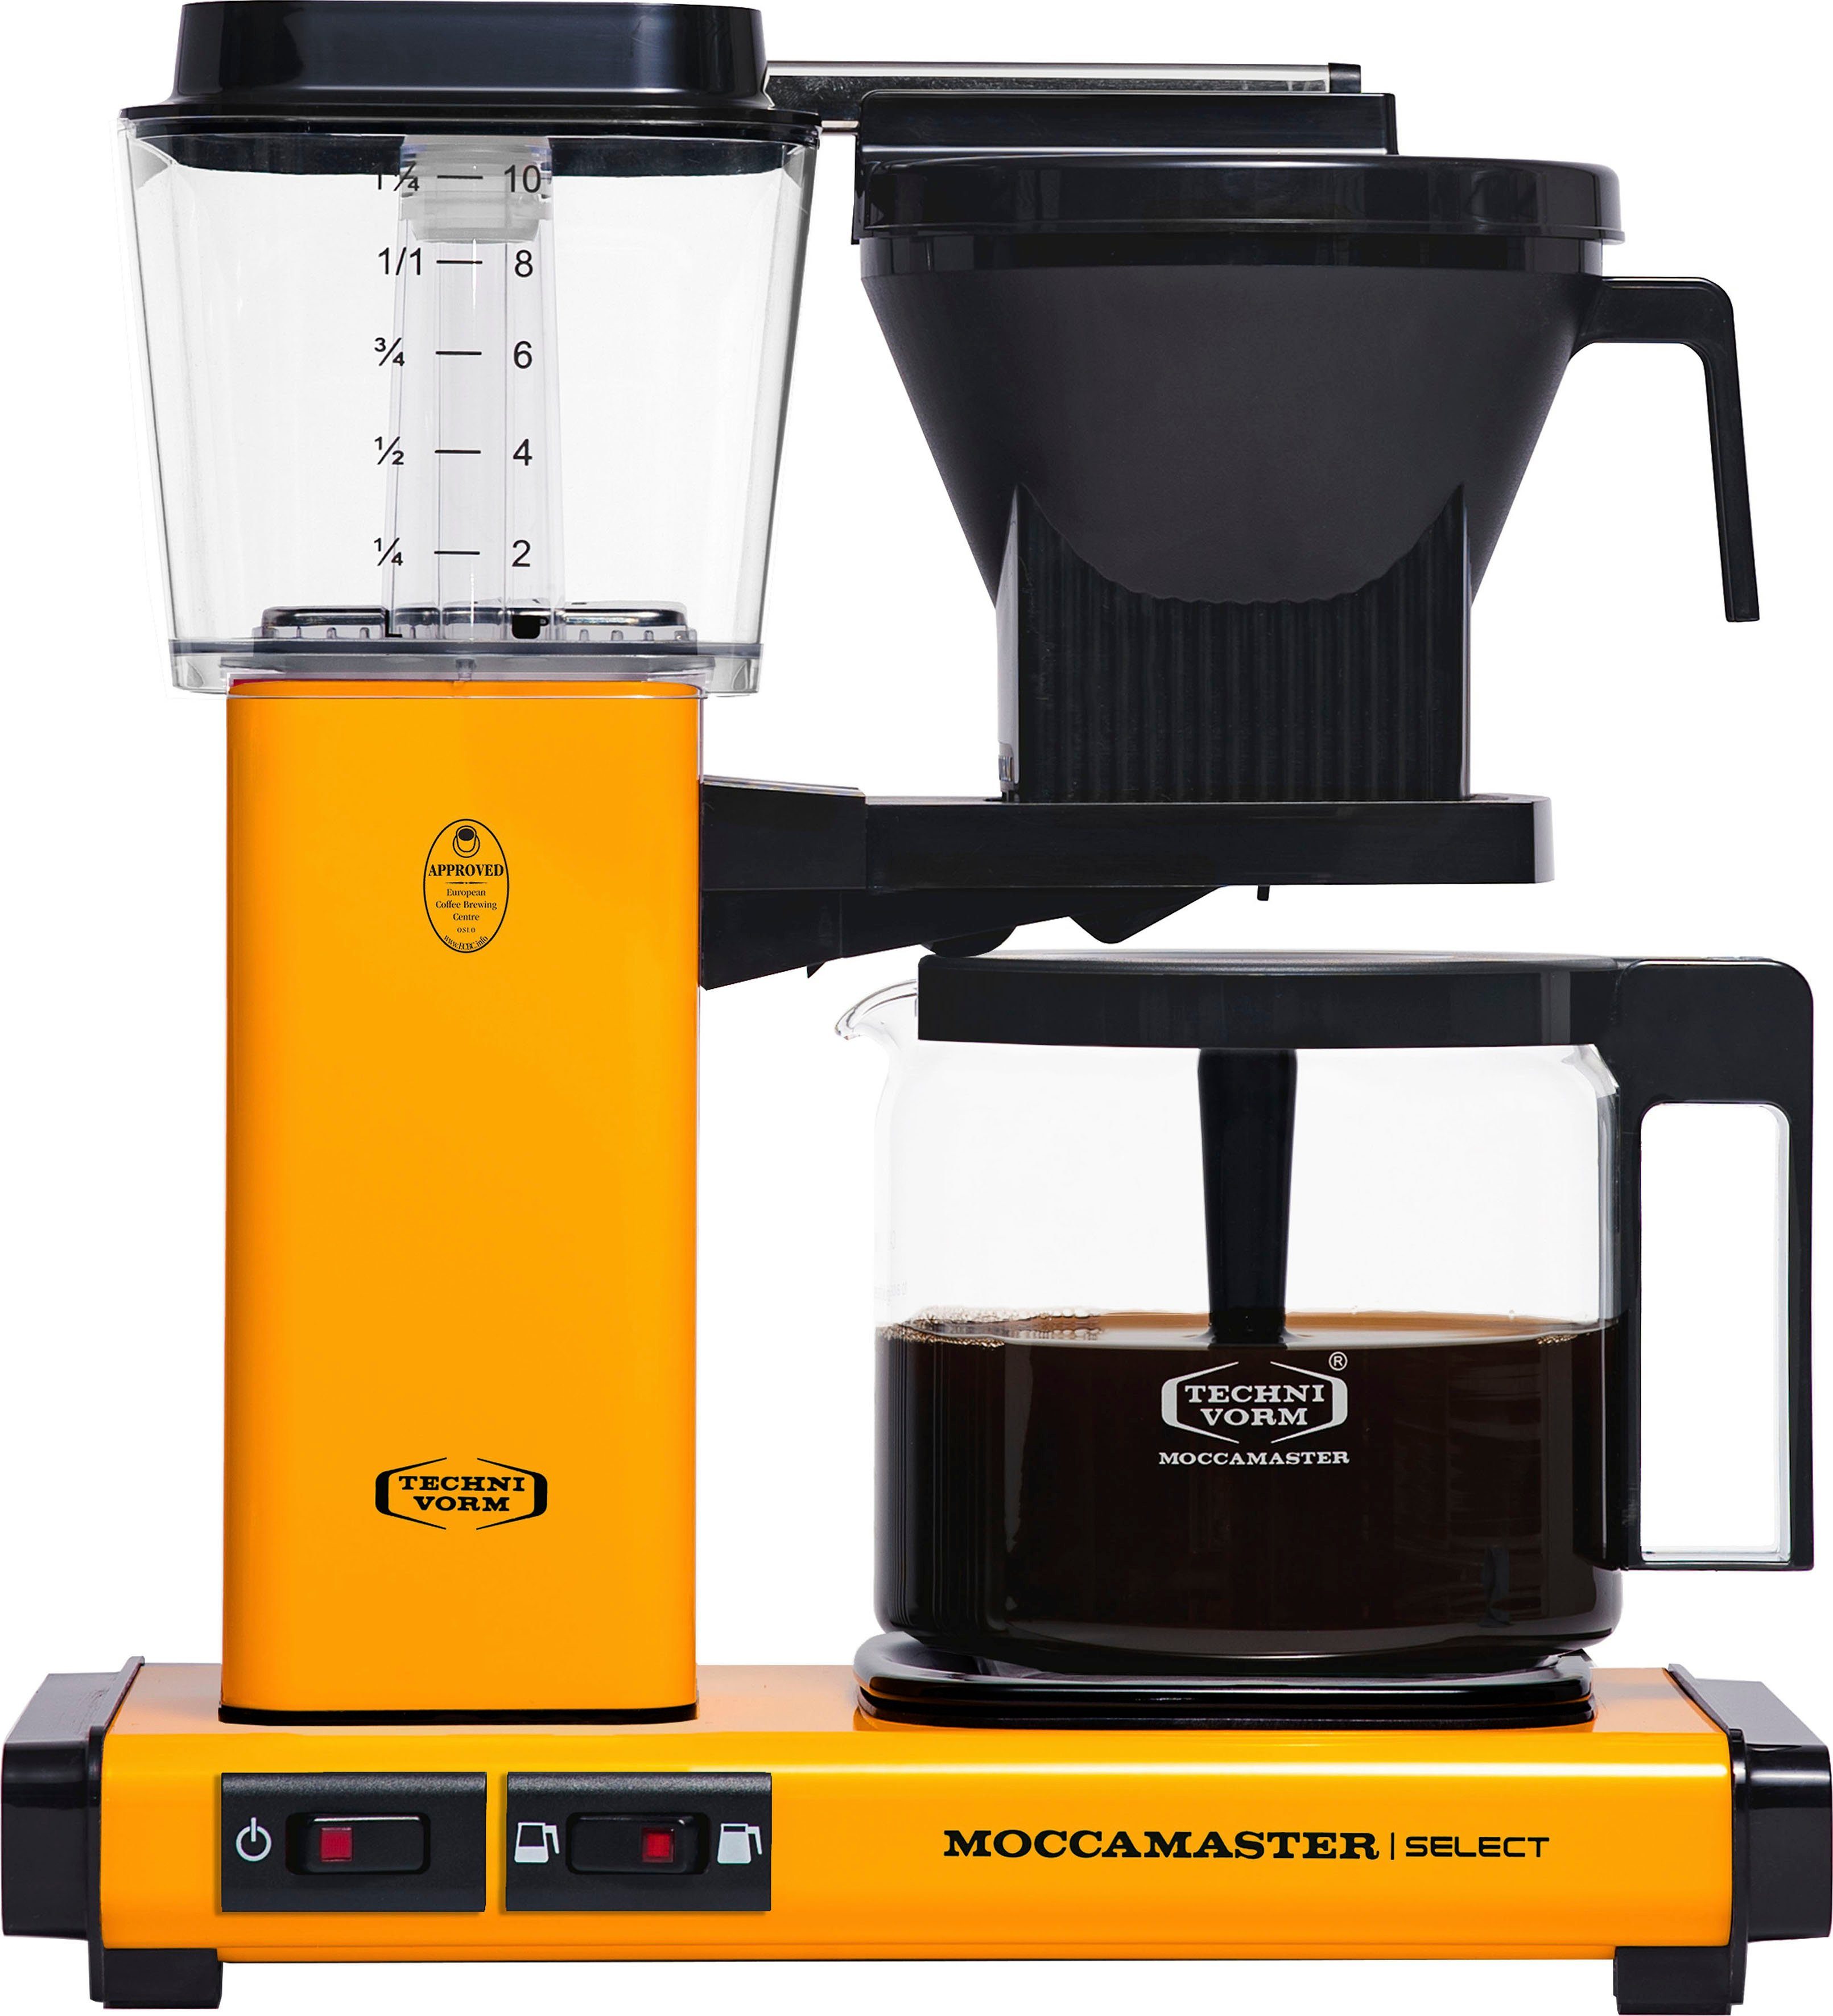 Moccamaster Filterkaffeemaschine KBG Select yellow pepper, 1,25l Kaffeekanne, Papierfilter 1x4 | Filterkaffeemaschinen